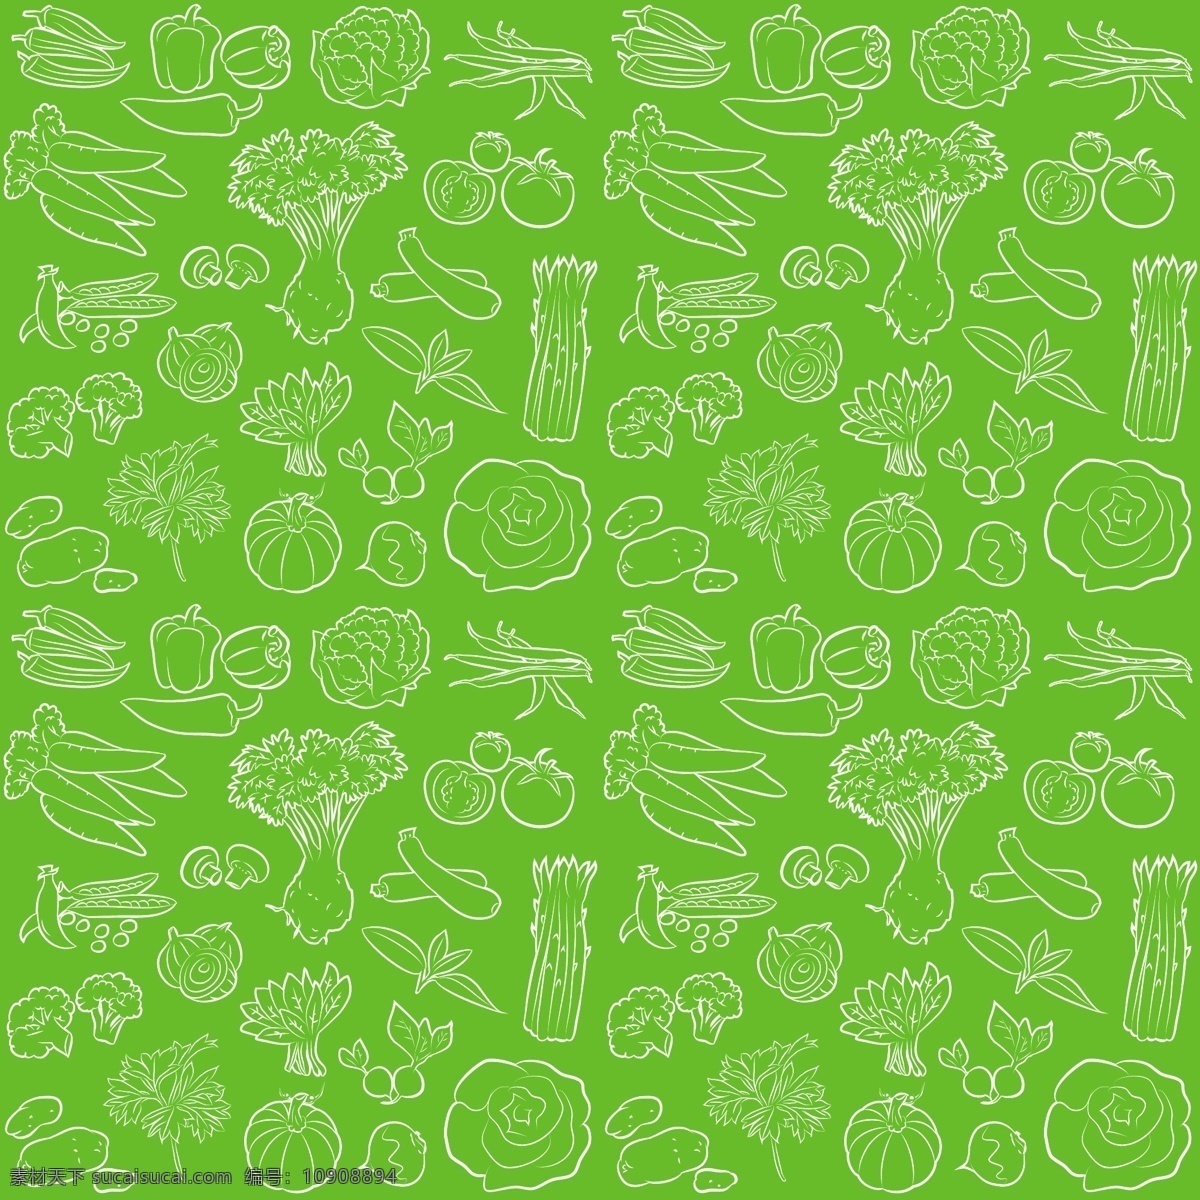 绿色食品 绿色健康 蔬菜 绿叶 手绘 菜单 eco menu 绿色环保 绿色 环保 绿色标签 食品标签 矢量 生物世界